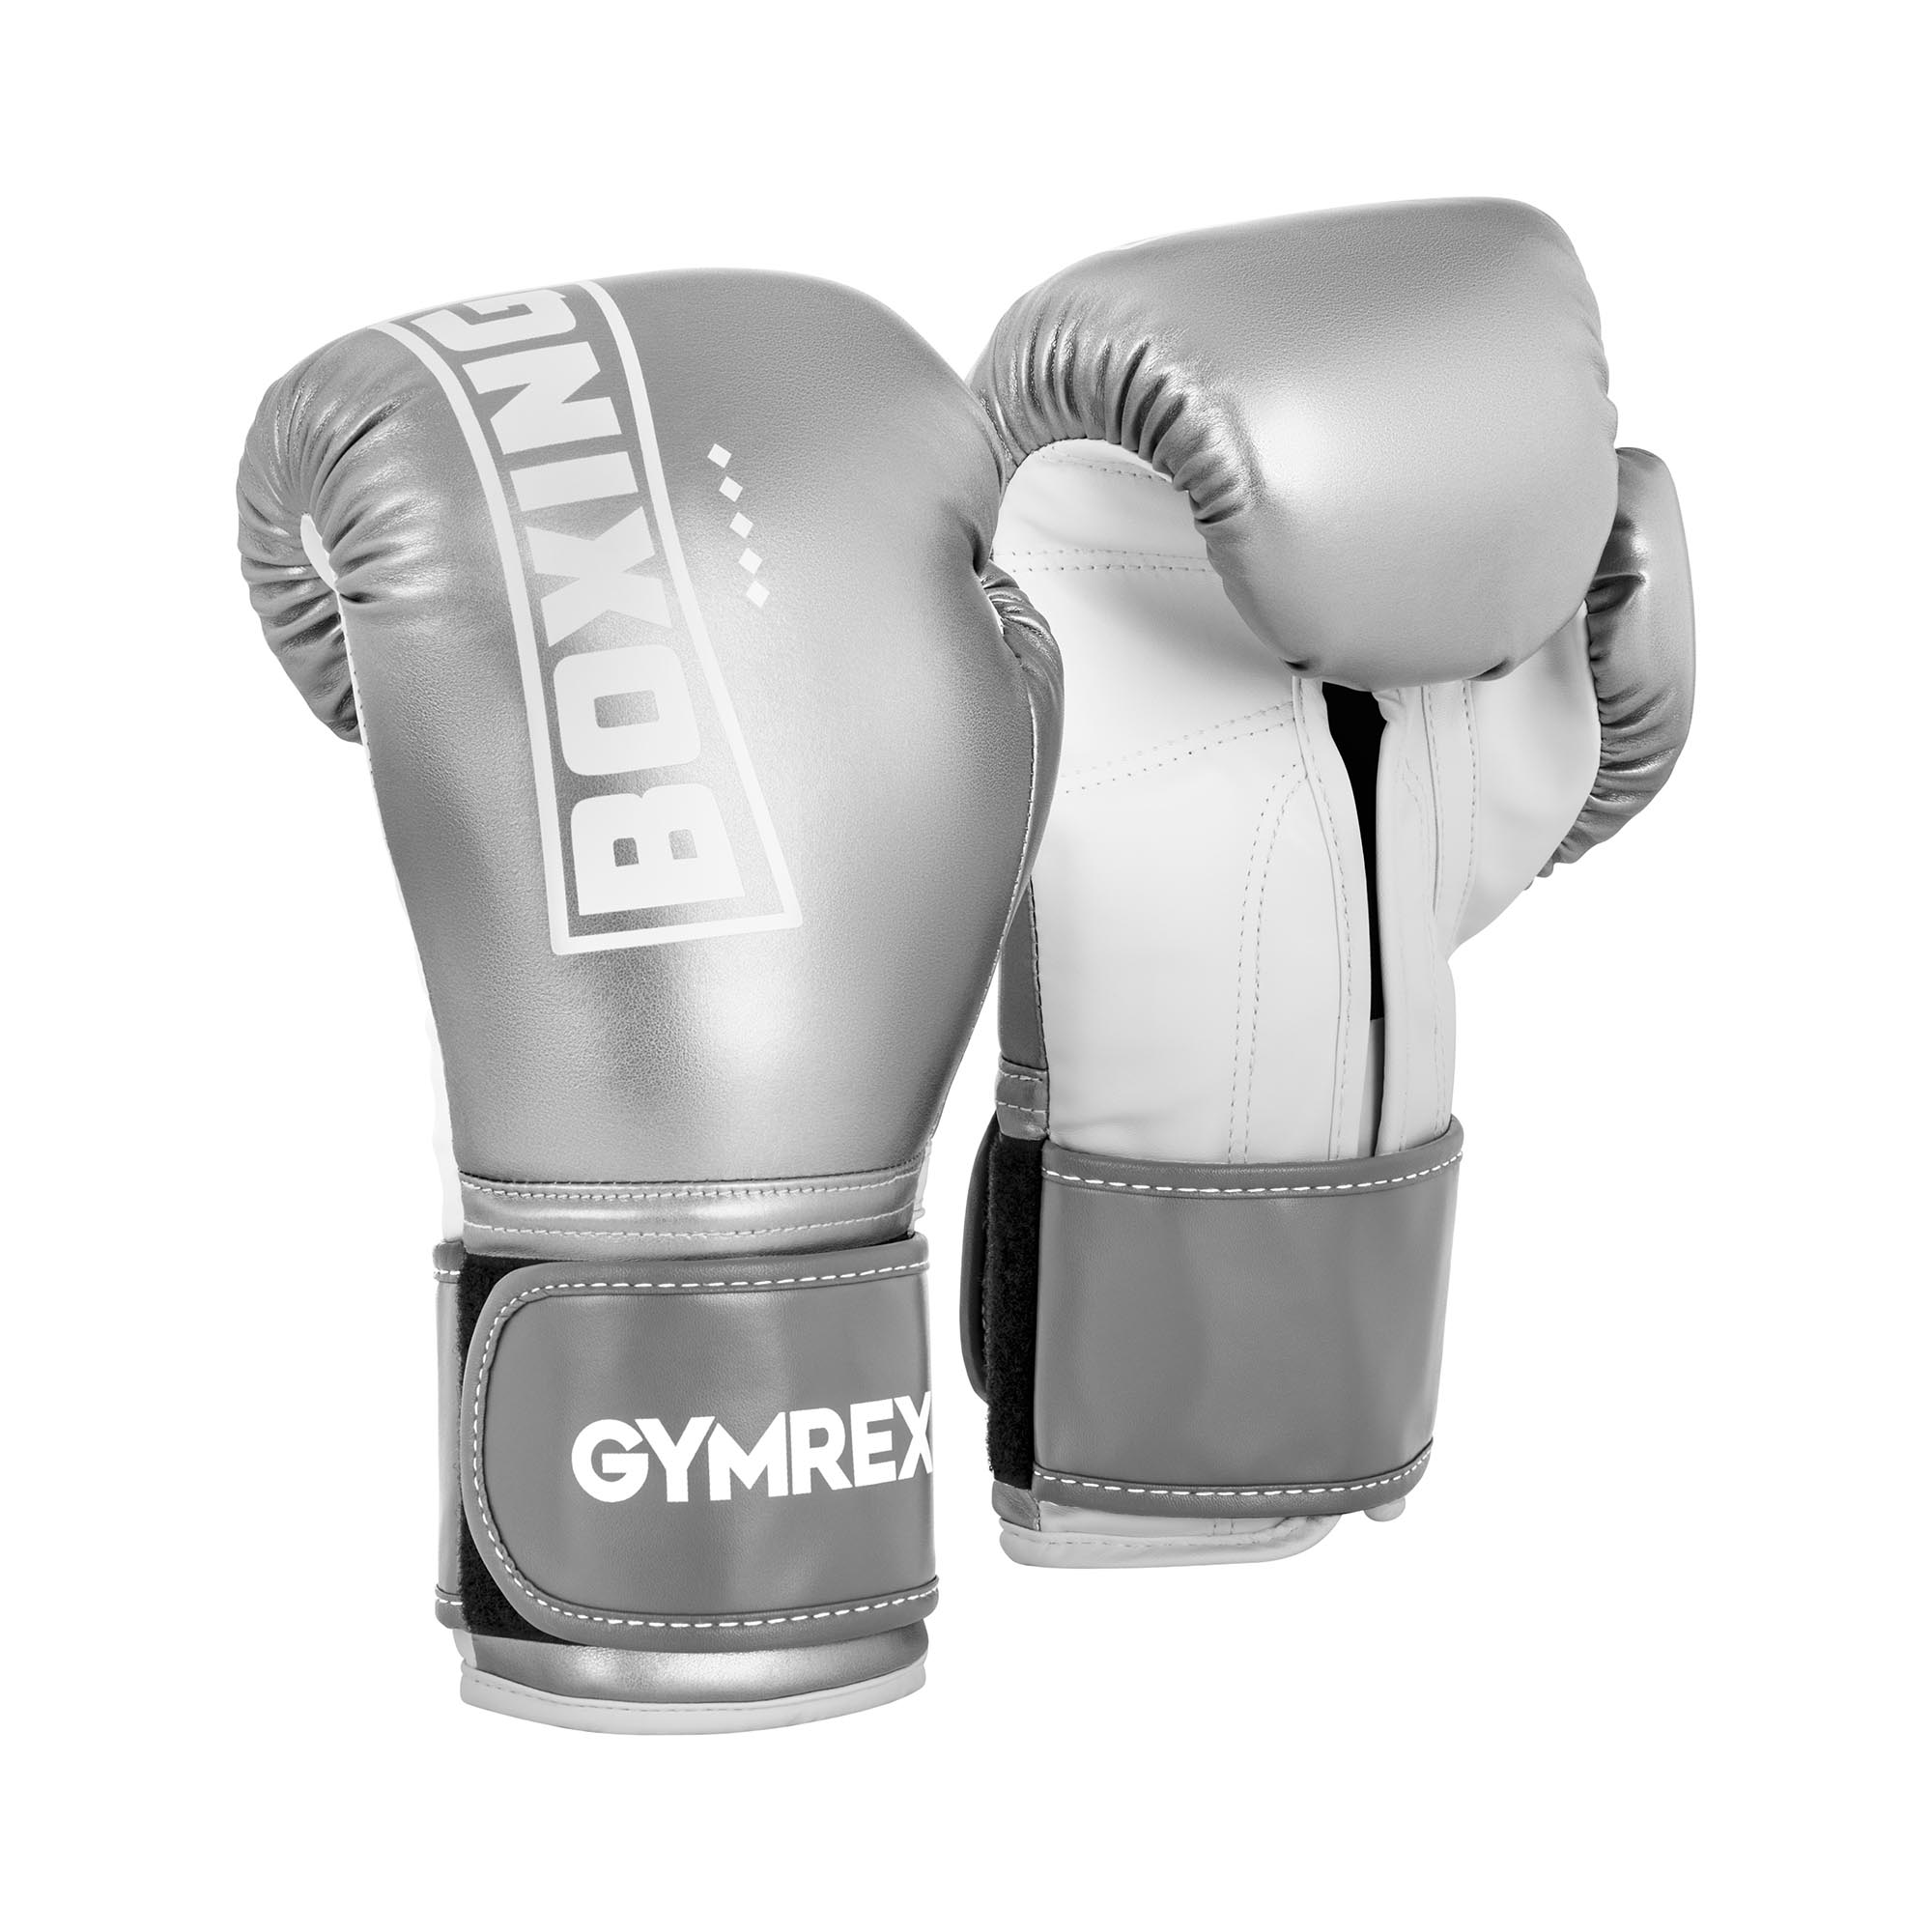 Gymrex Boxing Gloves - 12 oz - metallic silver and white